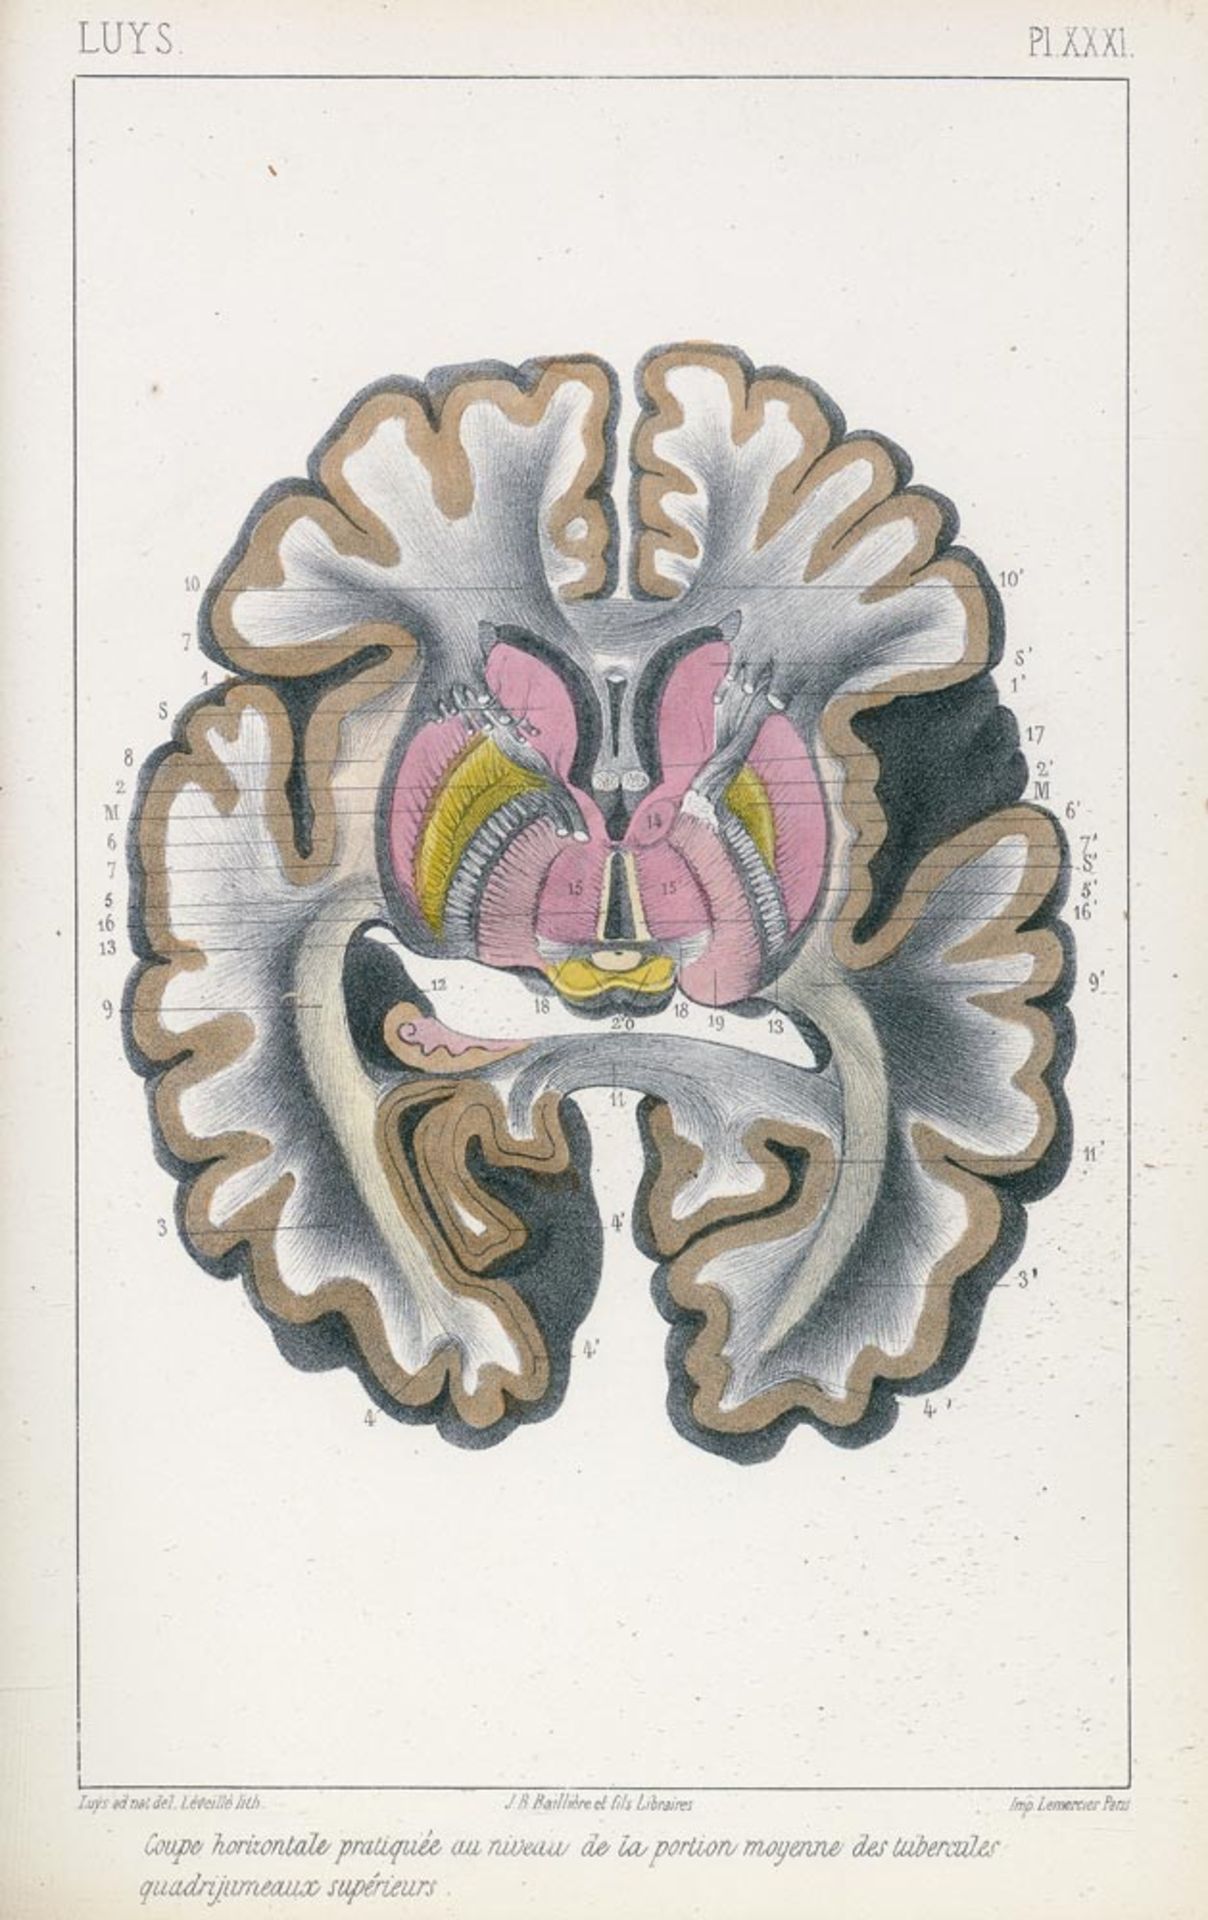 Luys, Jules Bernard: Recherches sur le système nerveux cérébro-spinal sa structure